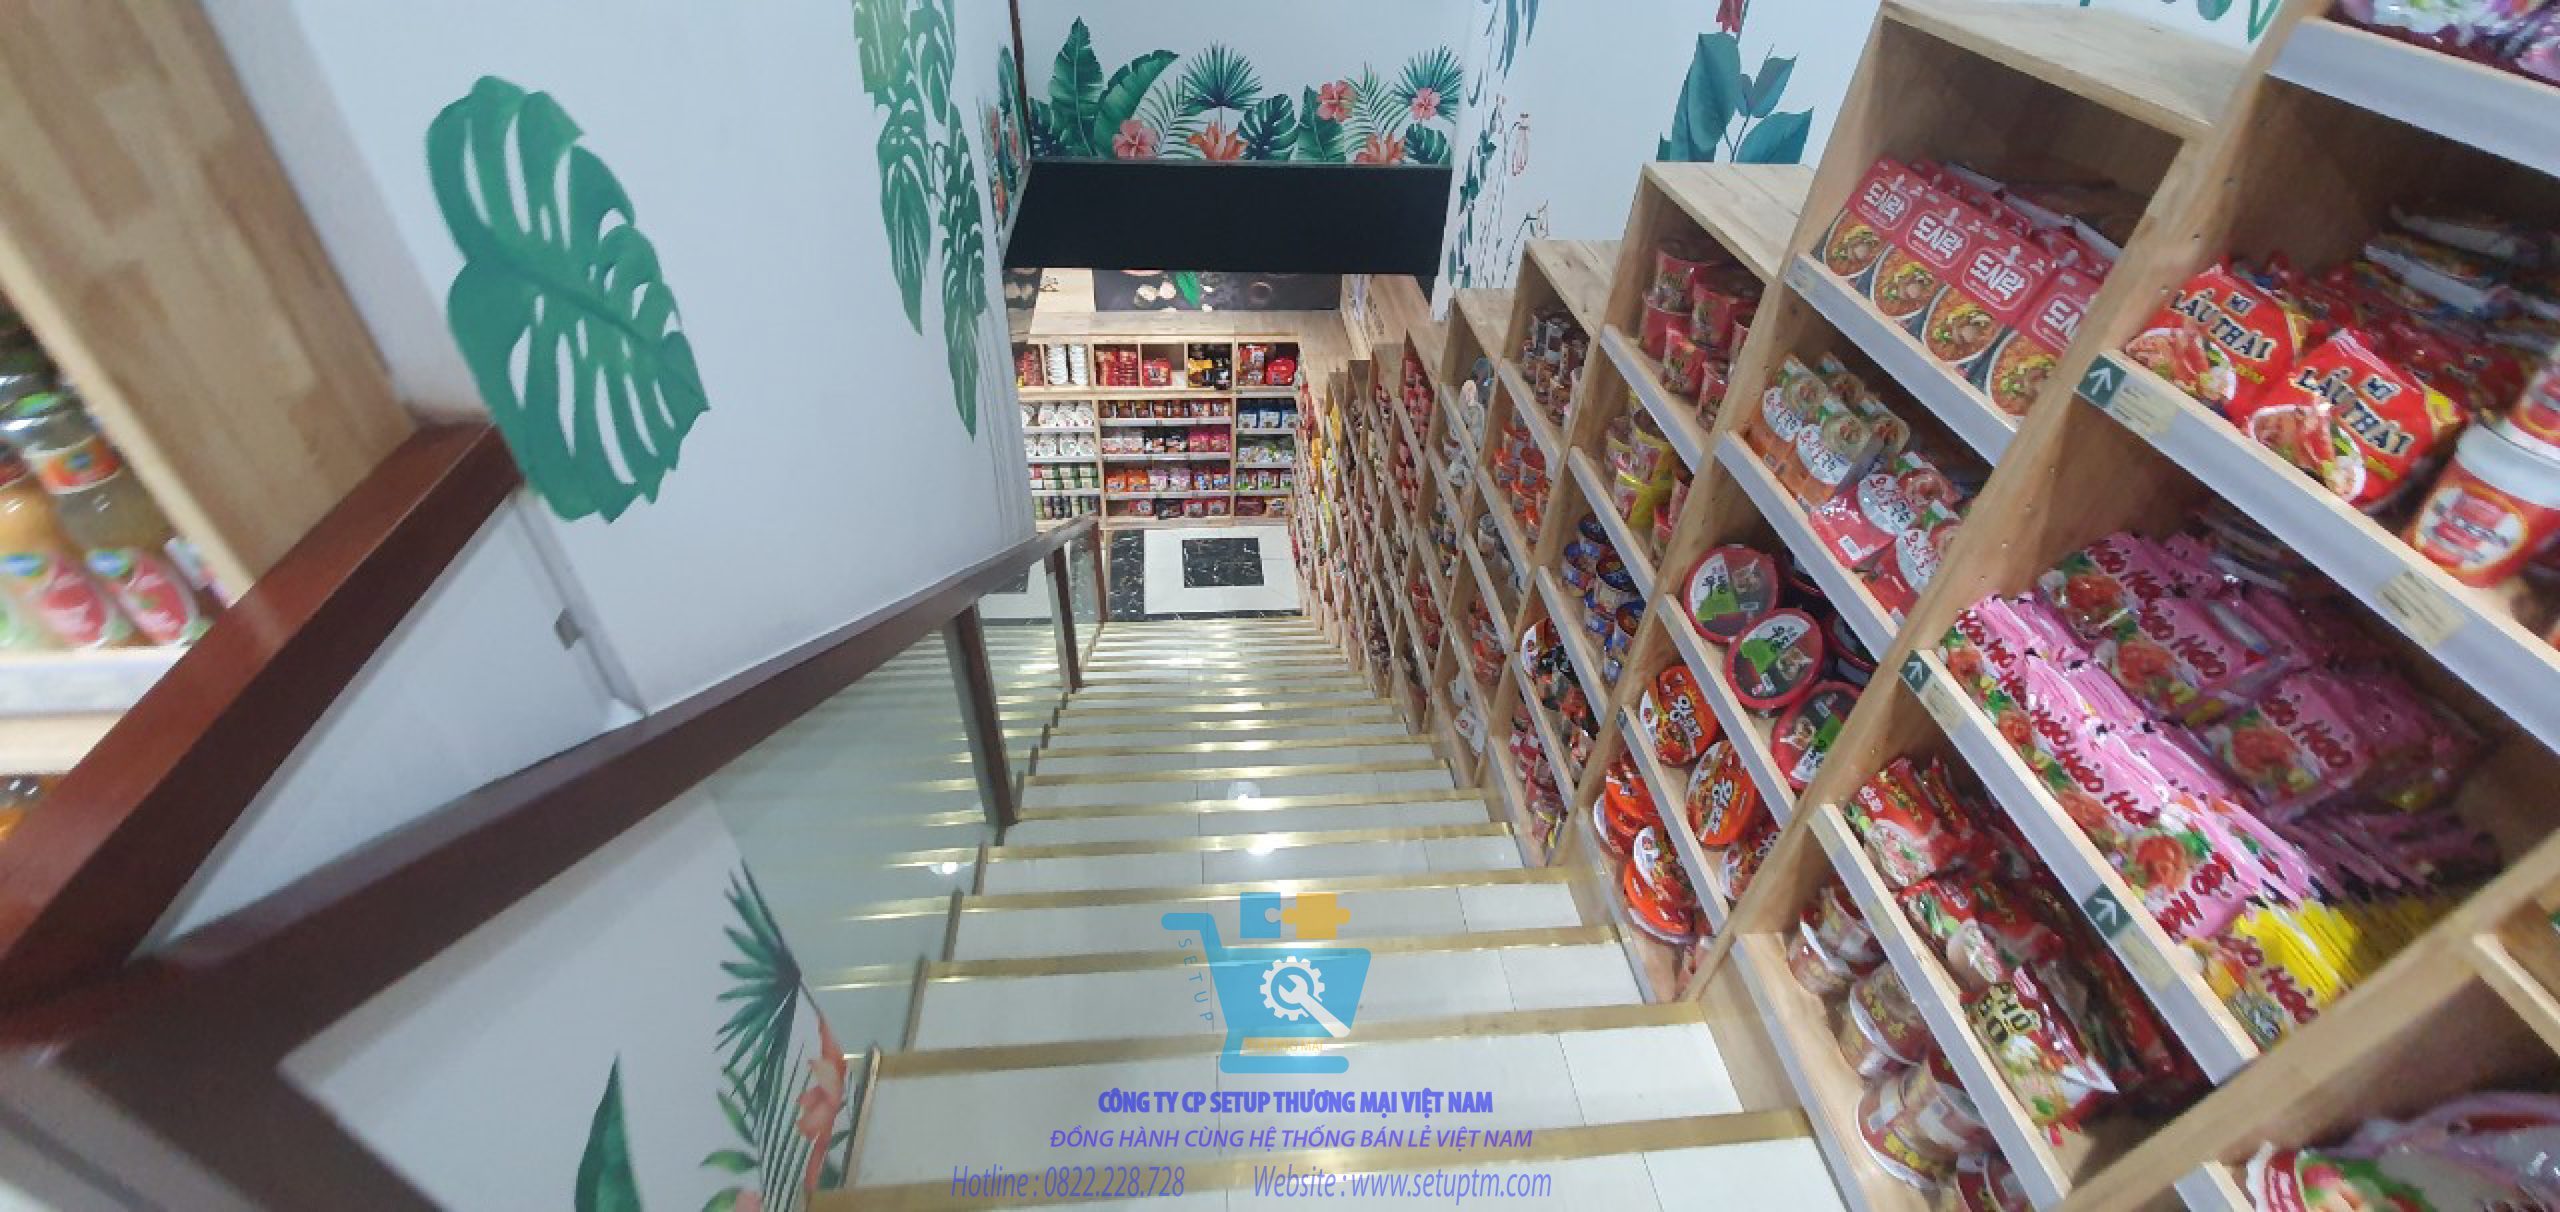 nguyên tắc thiết kế siêu thị mini 2 tầng có lối dẫn đường cho khách hàng 